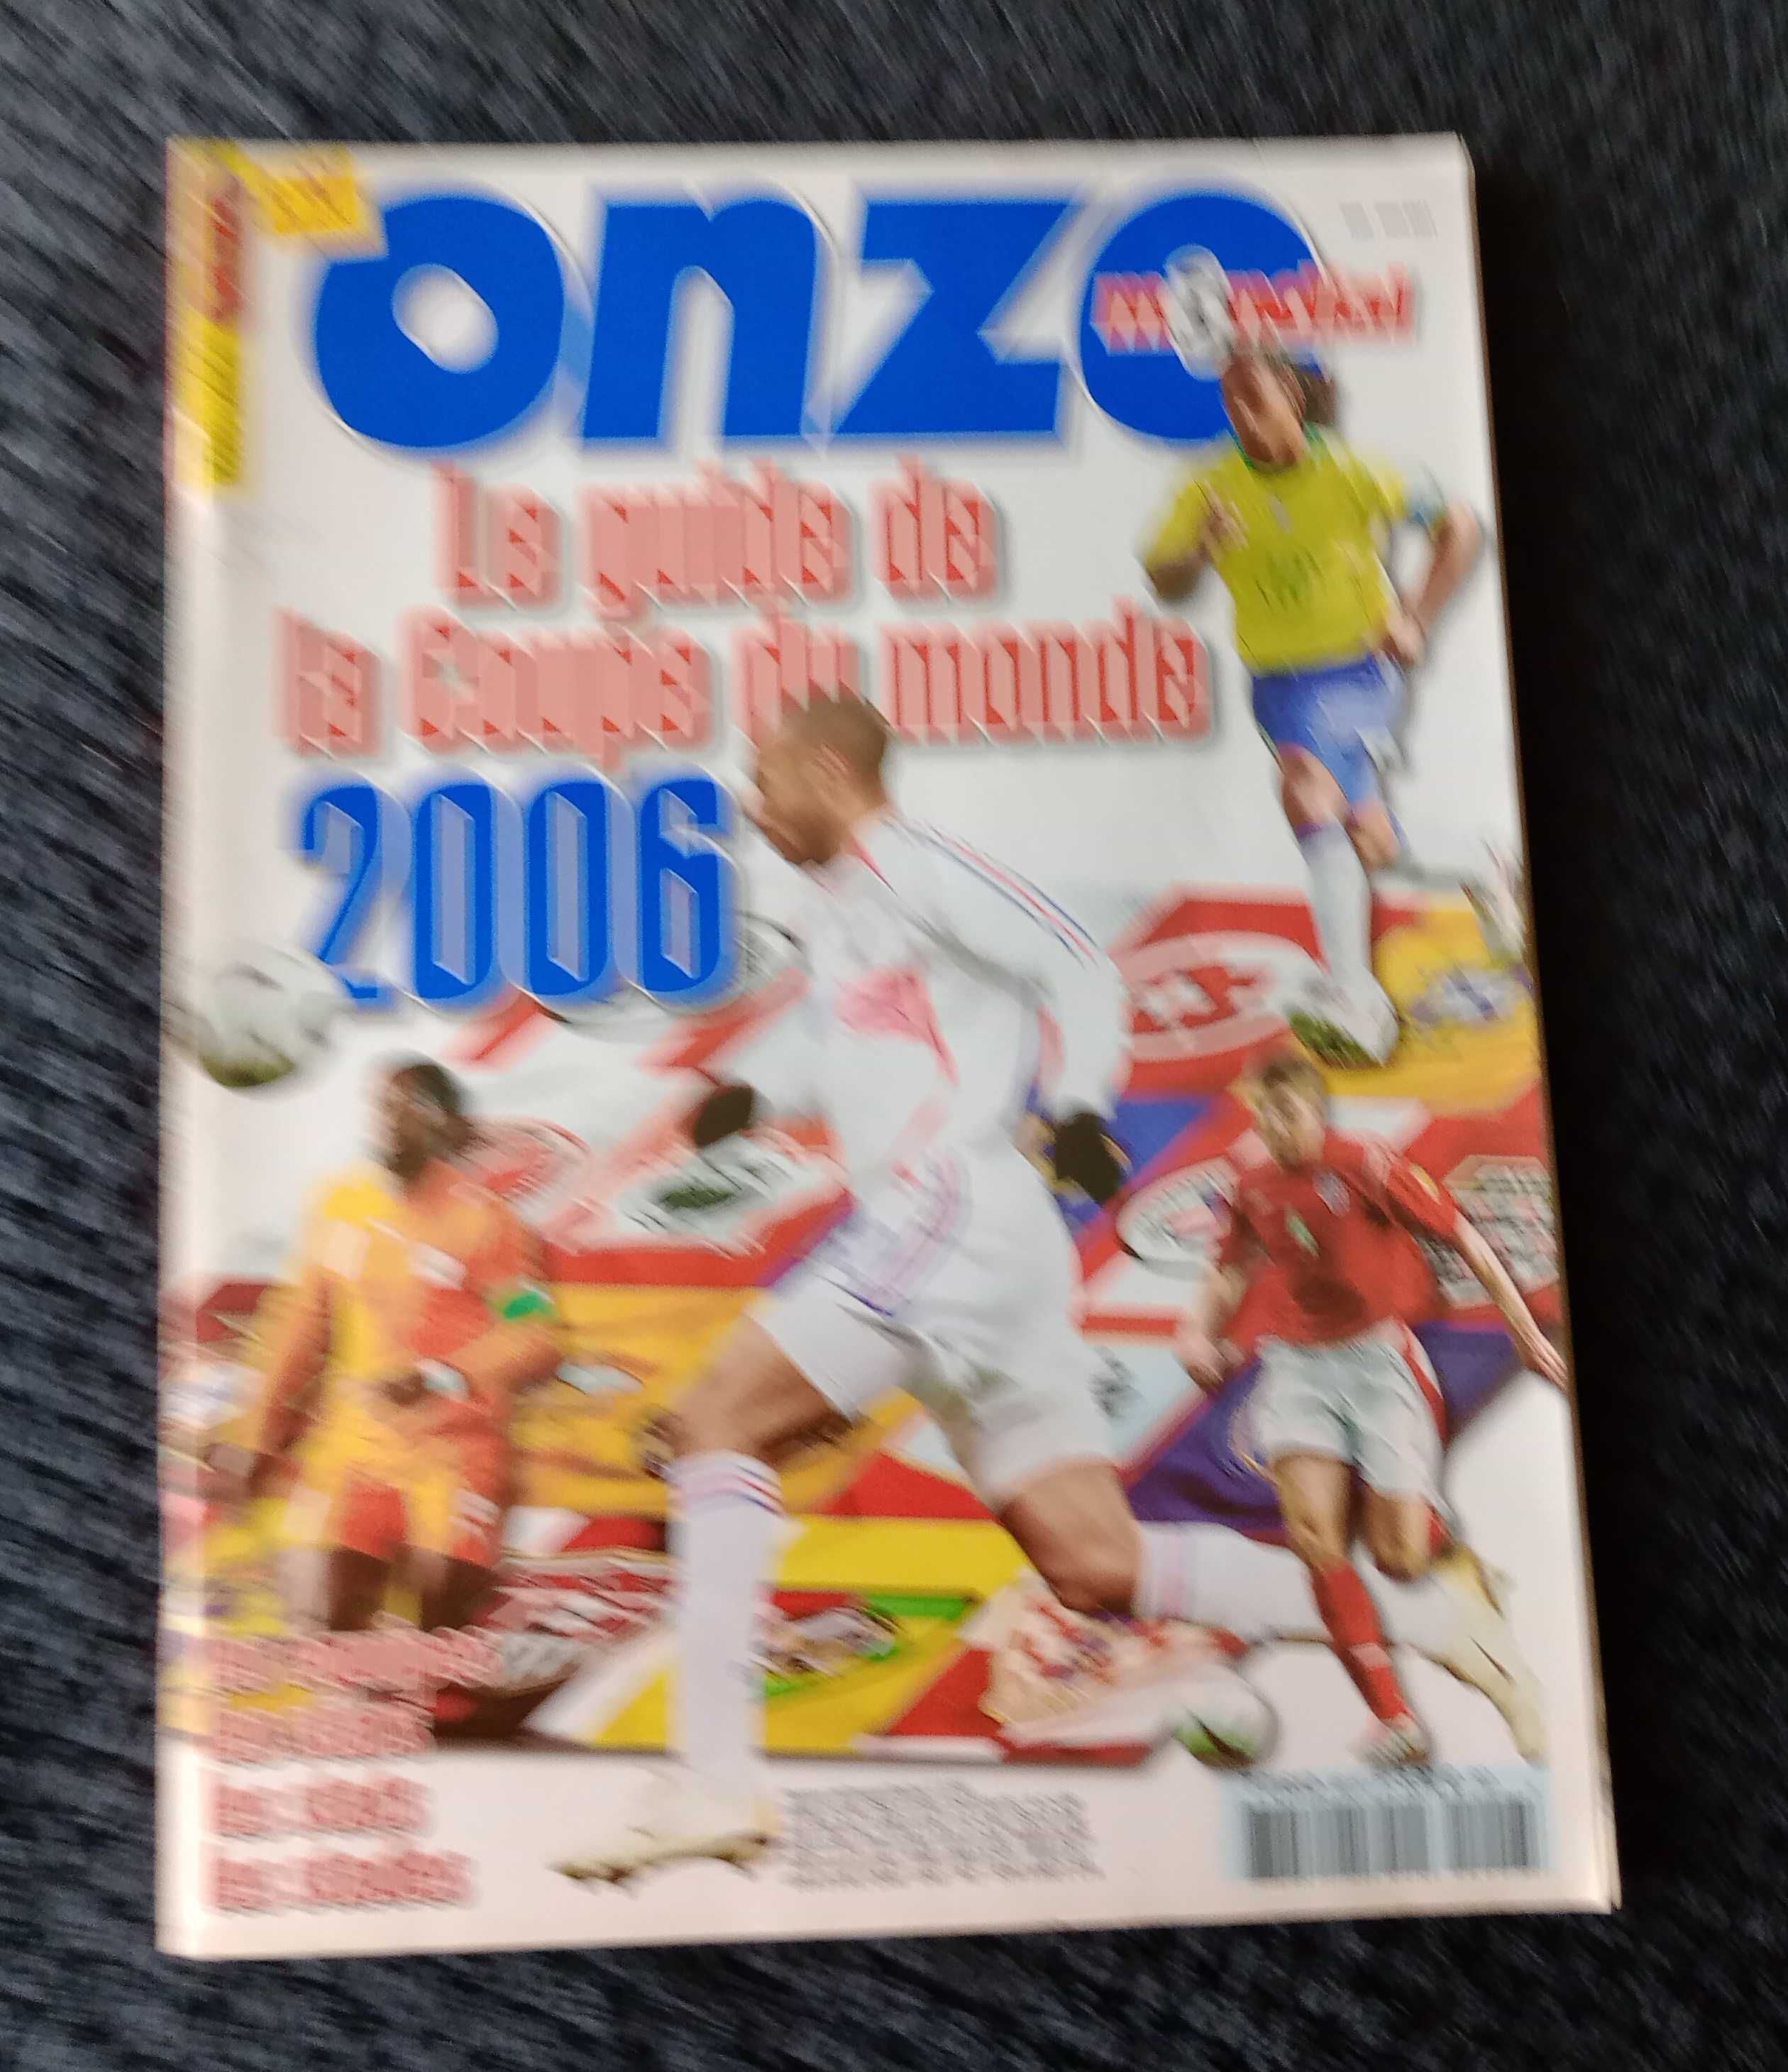 Revista Onze Mondial - Tudo sobre a  Copa Mundo 2006 - Guia completo